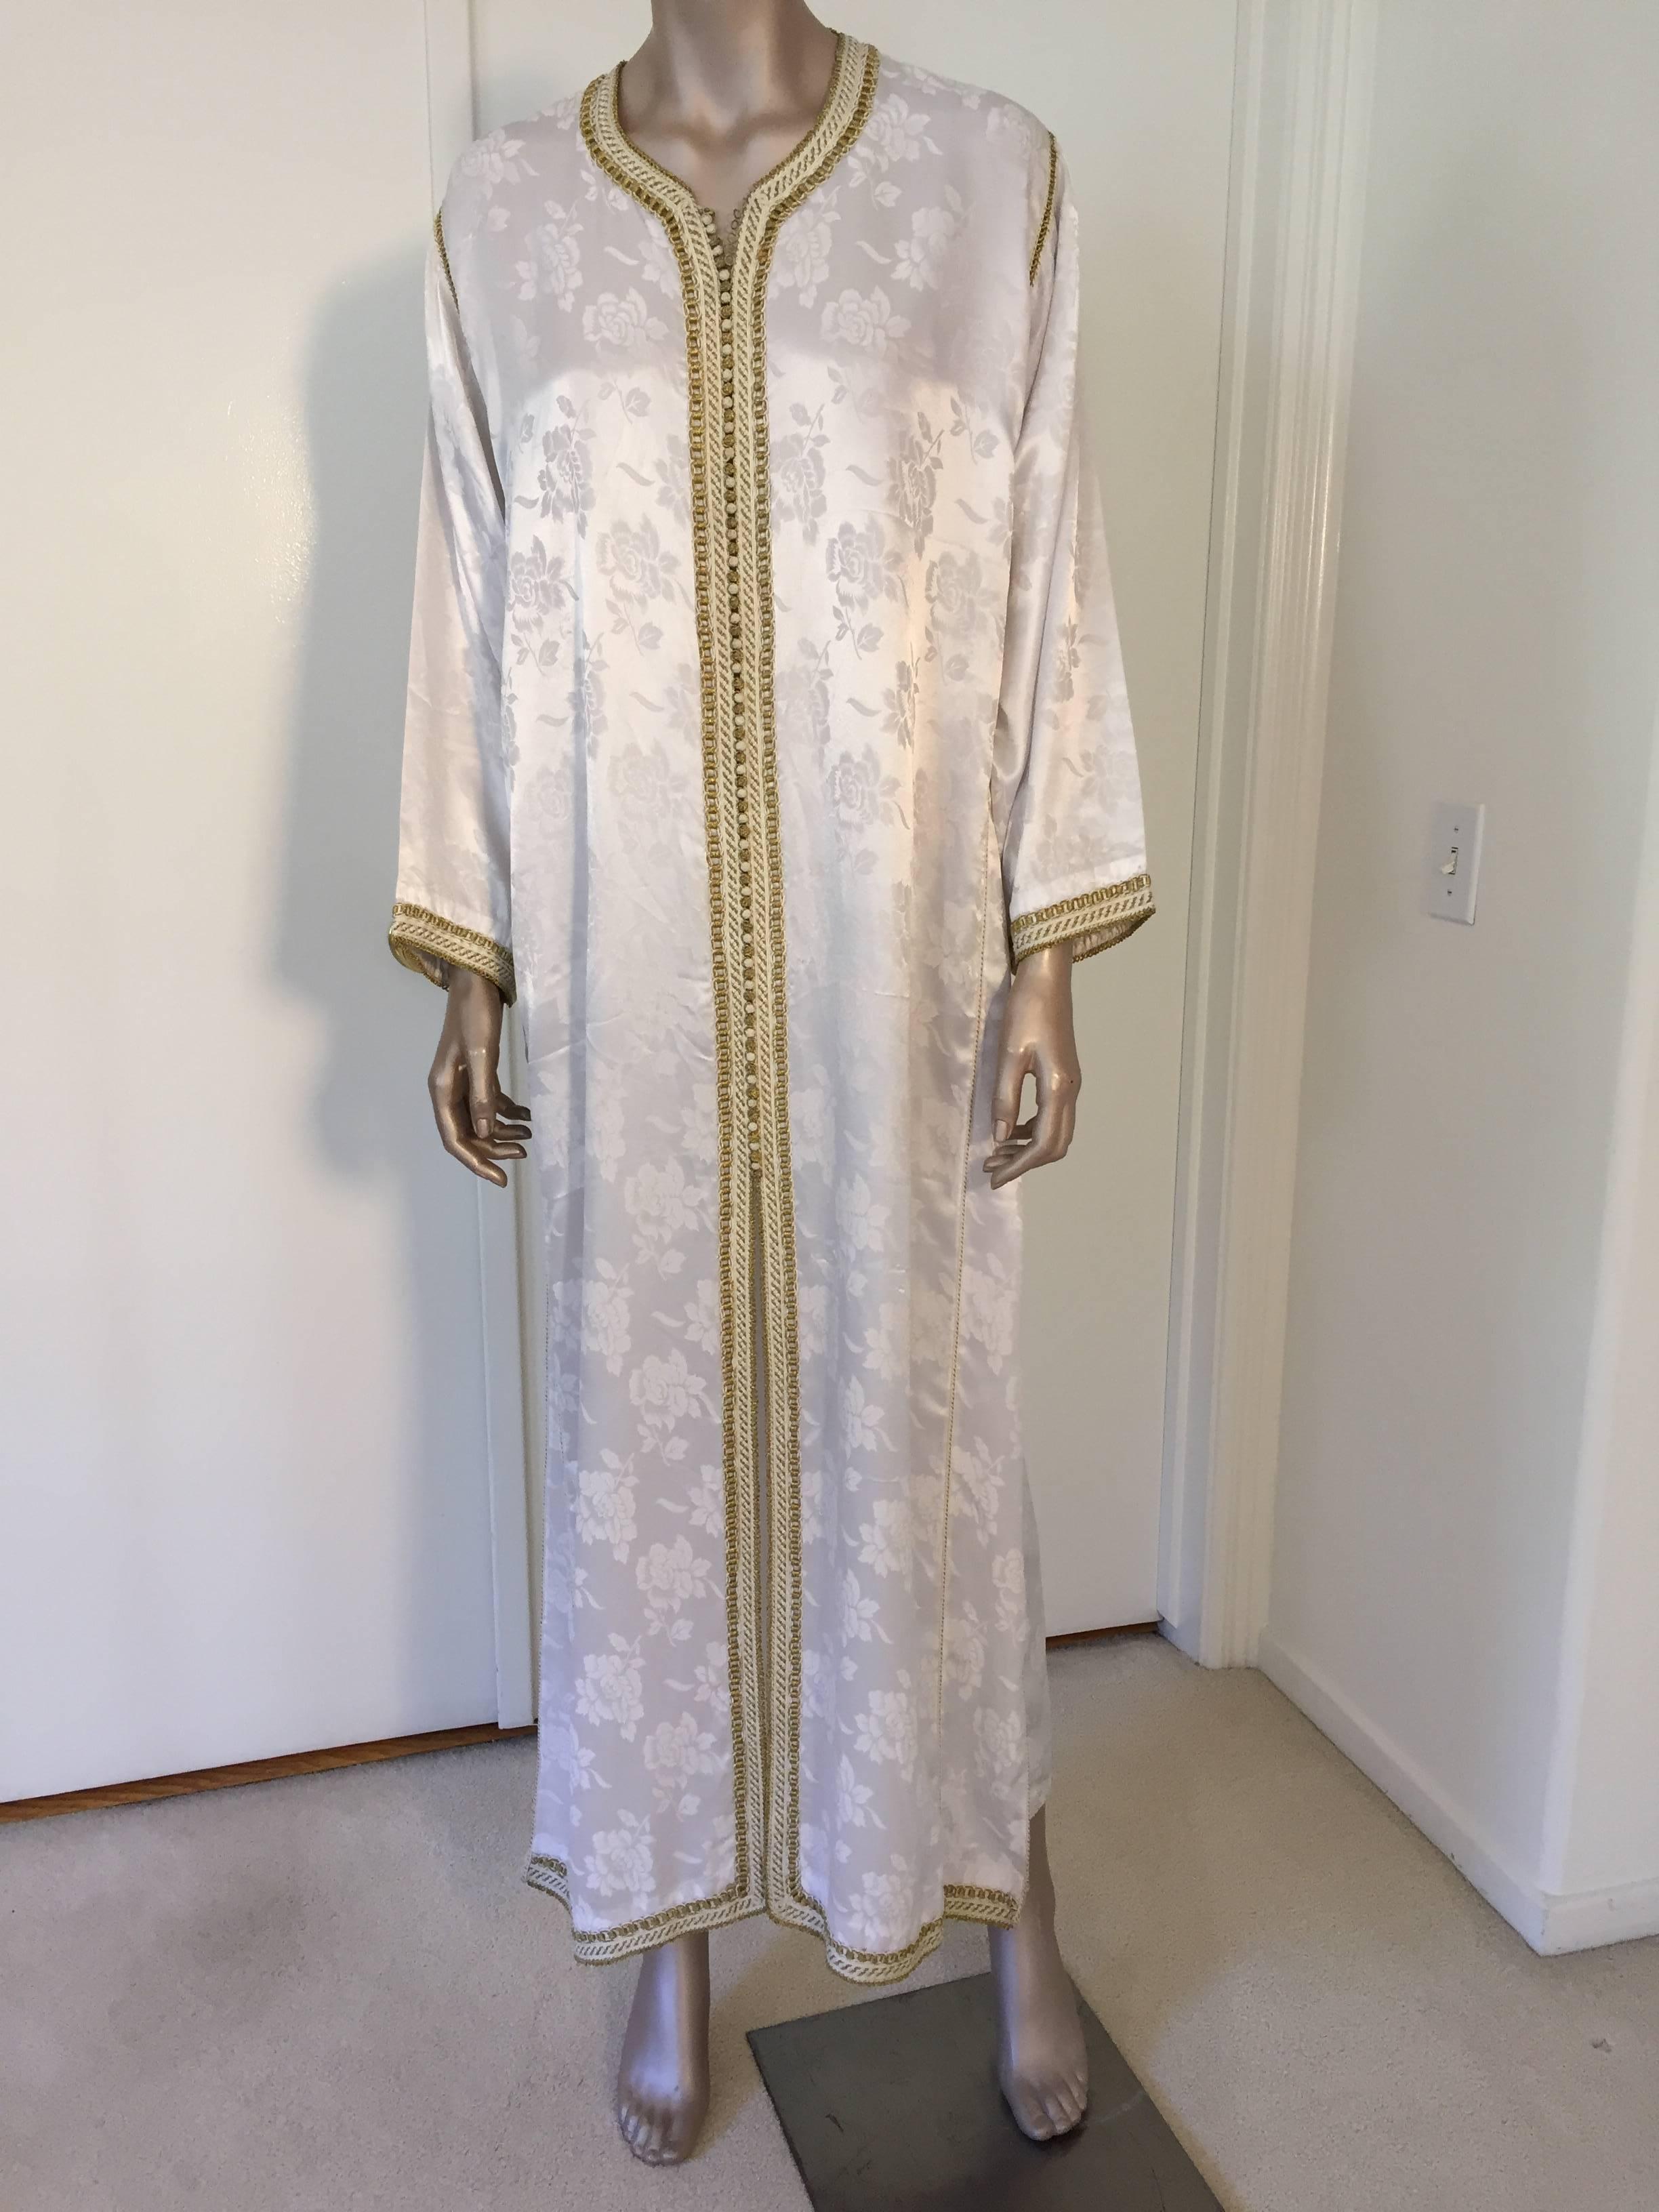 Élégante robe caftan marocaine blanche brodée d'une bordure dorée, vers les années 1970. Ce long kaftan long est brodé et agrémenté entièrement à la main. Robe de soirée marocaine du Moyen-Orient, unique en son genre.
Le kaftan présente un décolleté